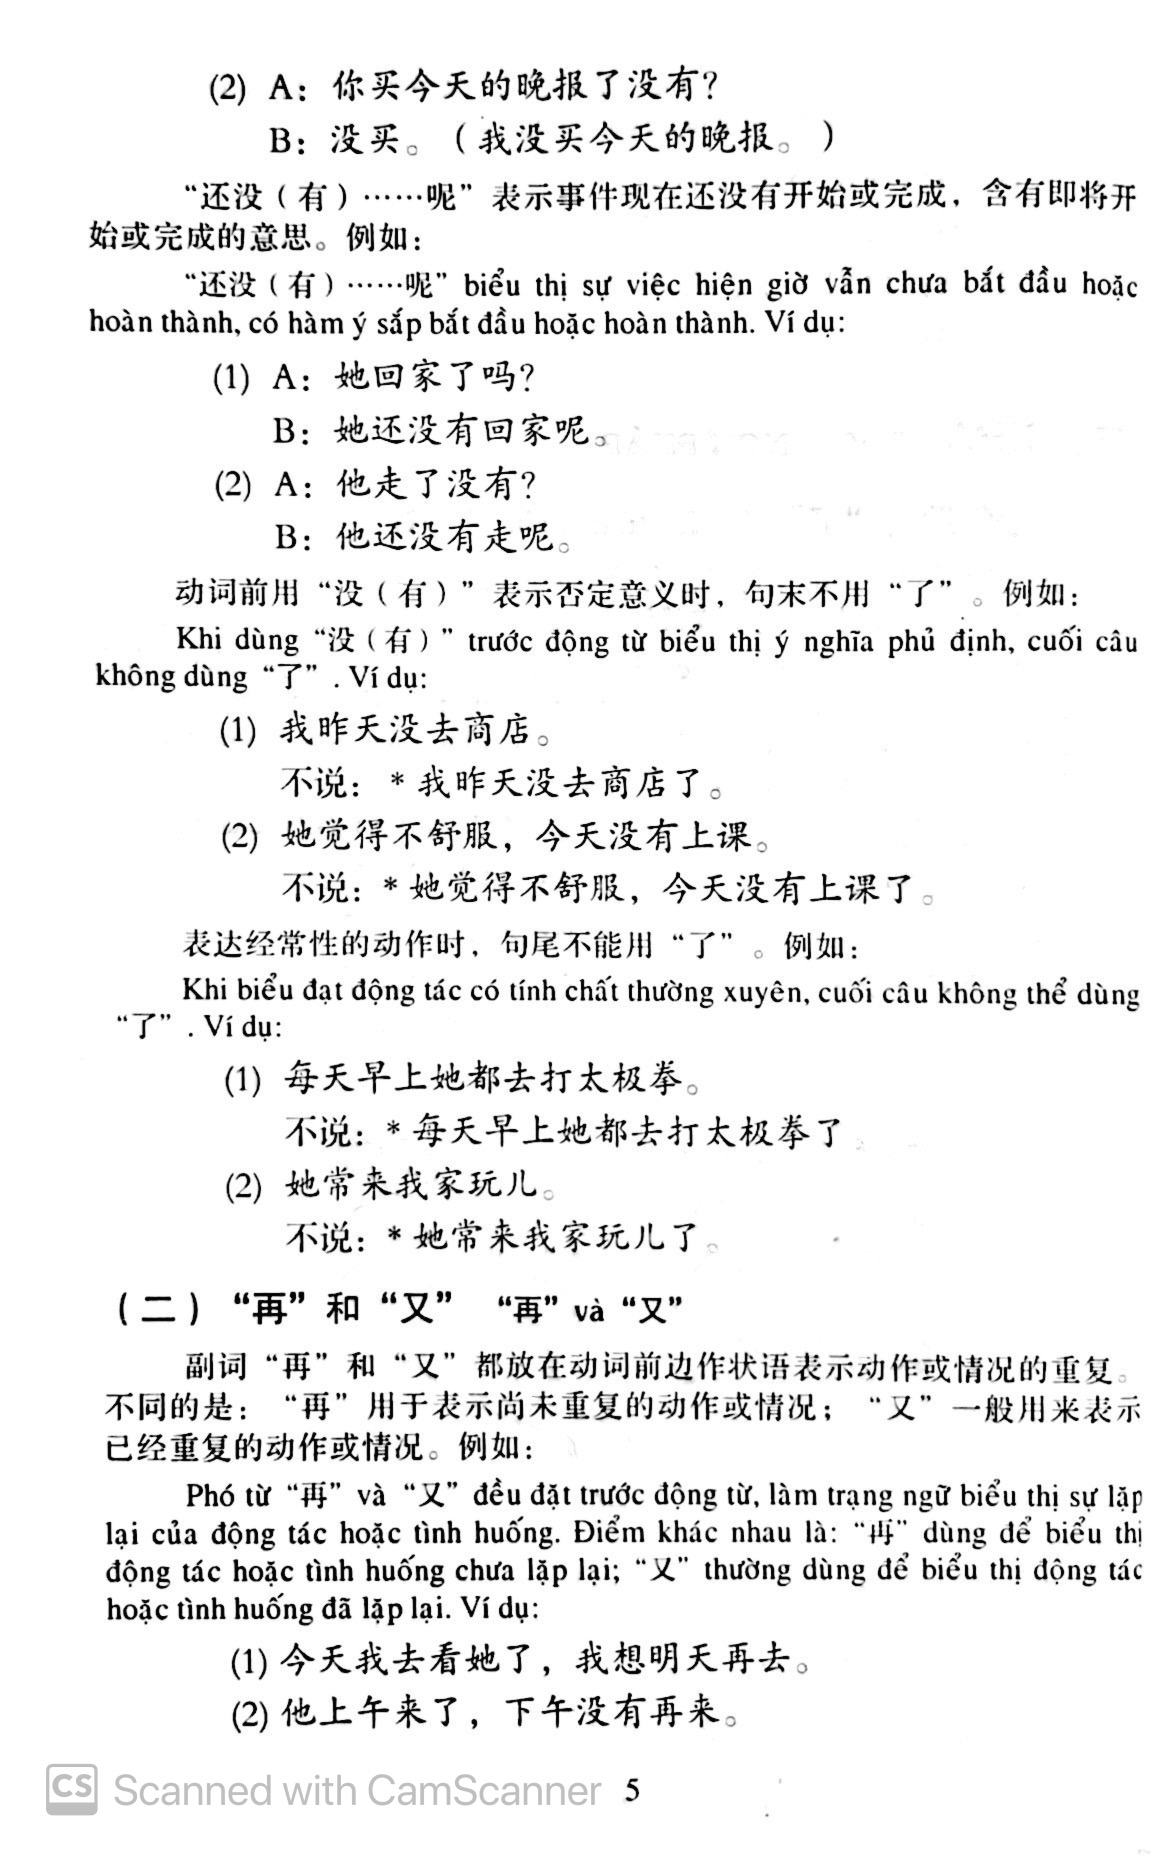 Giáo Trình Hán Ngữ Tập 2 - Quyển 1 PDF